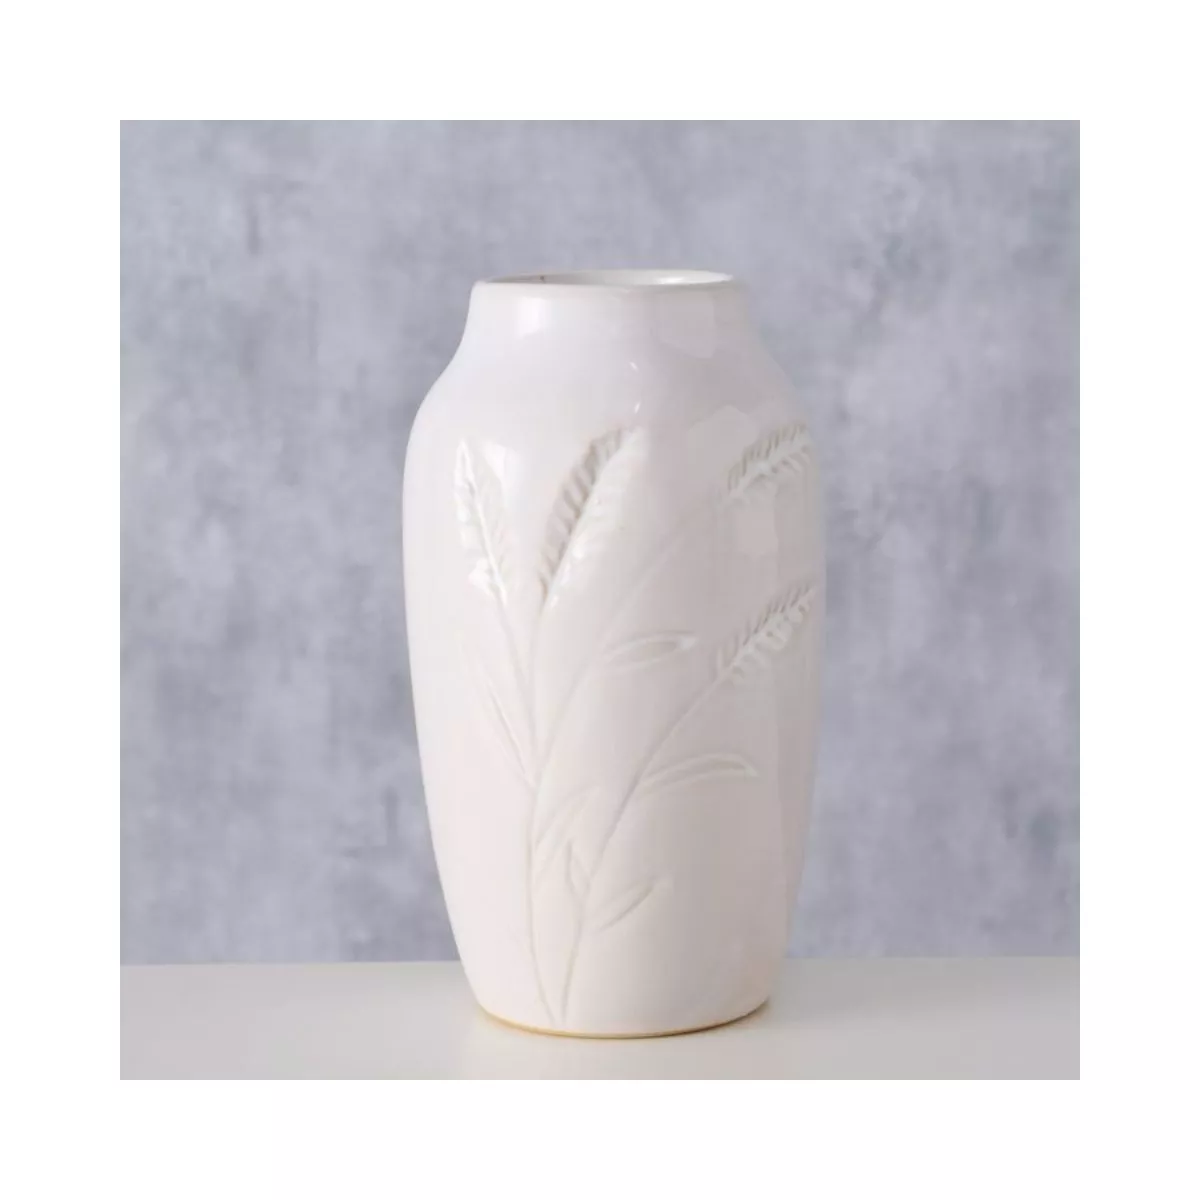 Vaza alba din ceramica 15 cm Jenna design spic Boltze 3